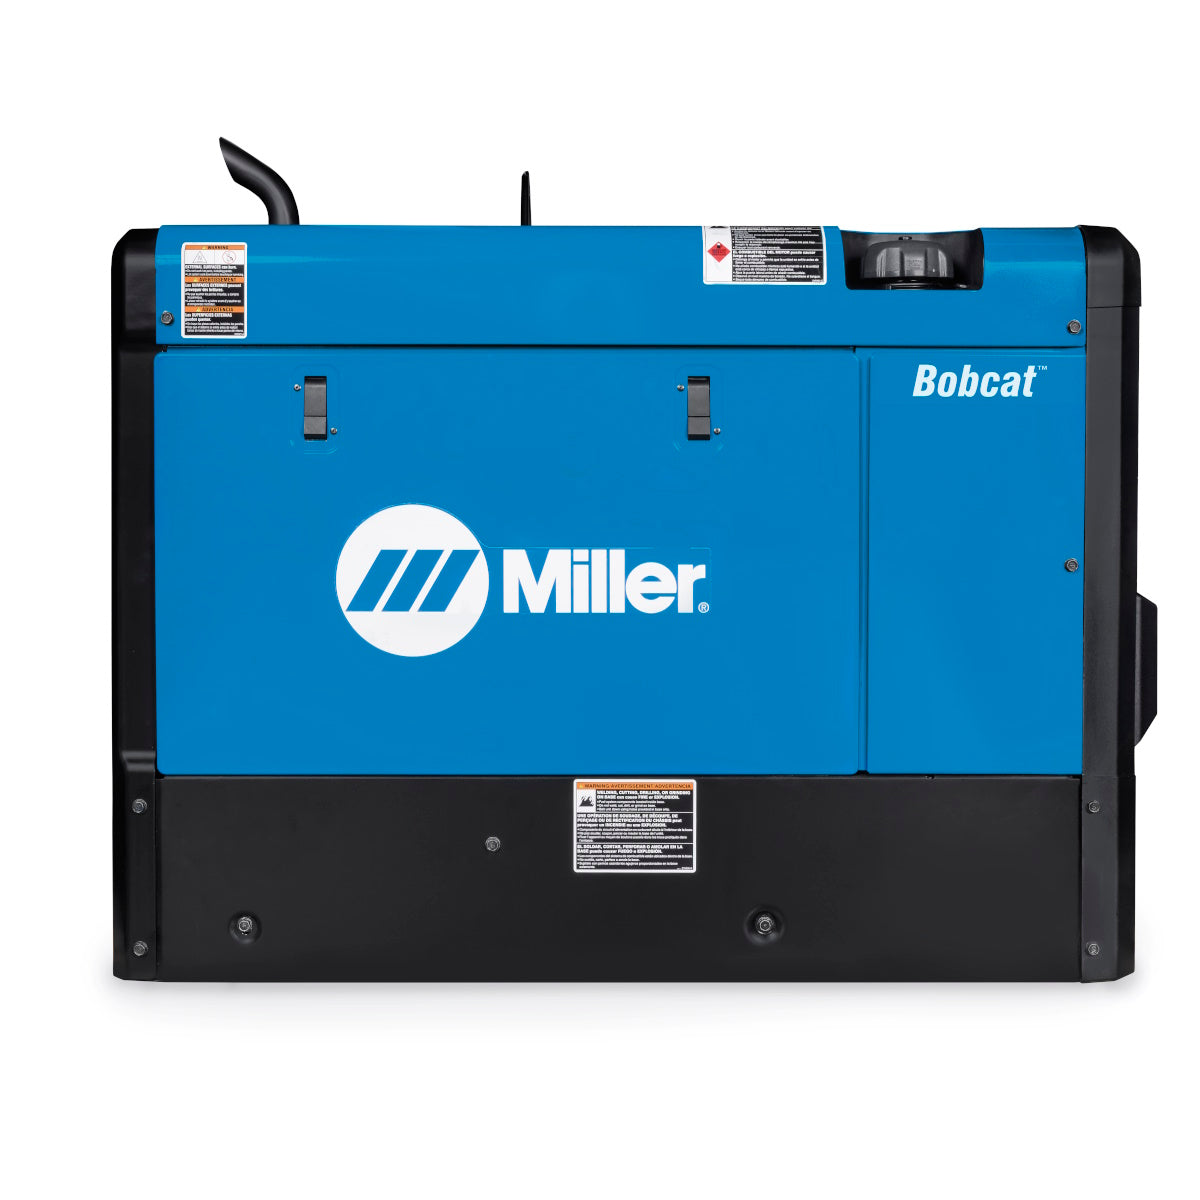 Miller Bobcat 230 Kohler Welder/Generator (907824)